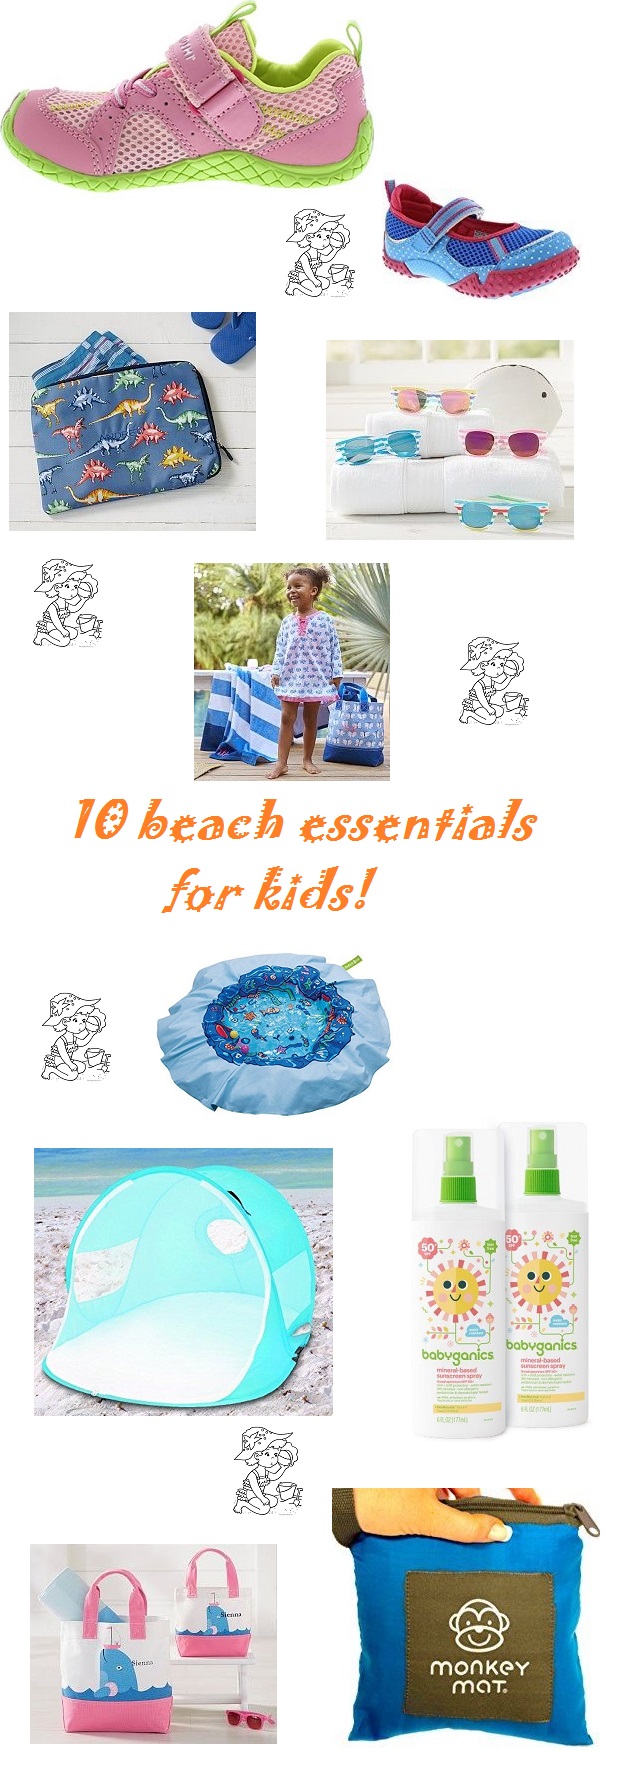 10 beach essentials for kids